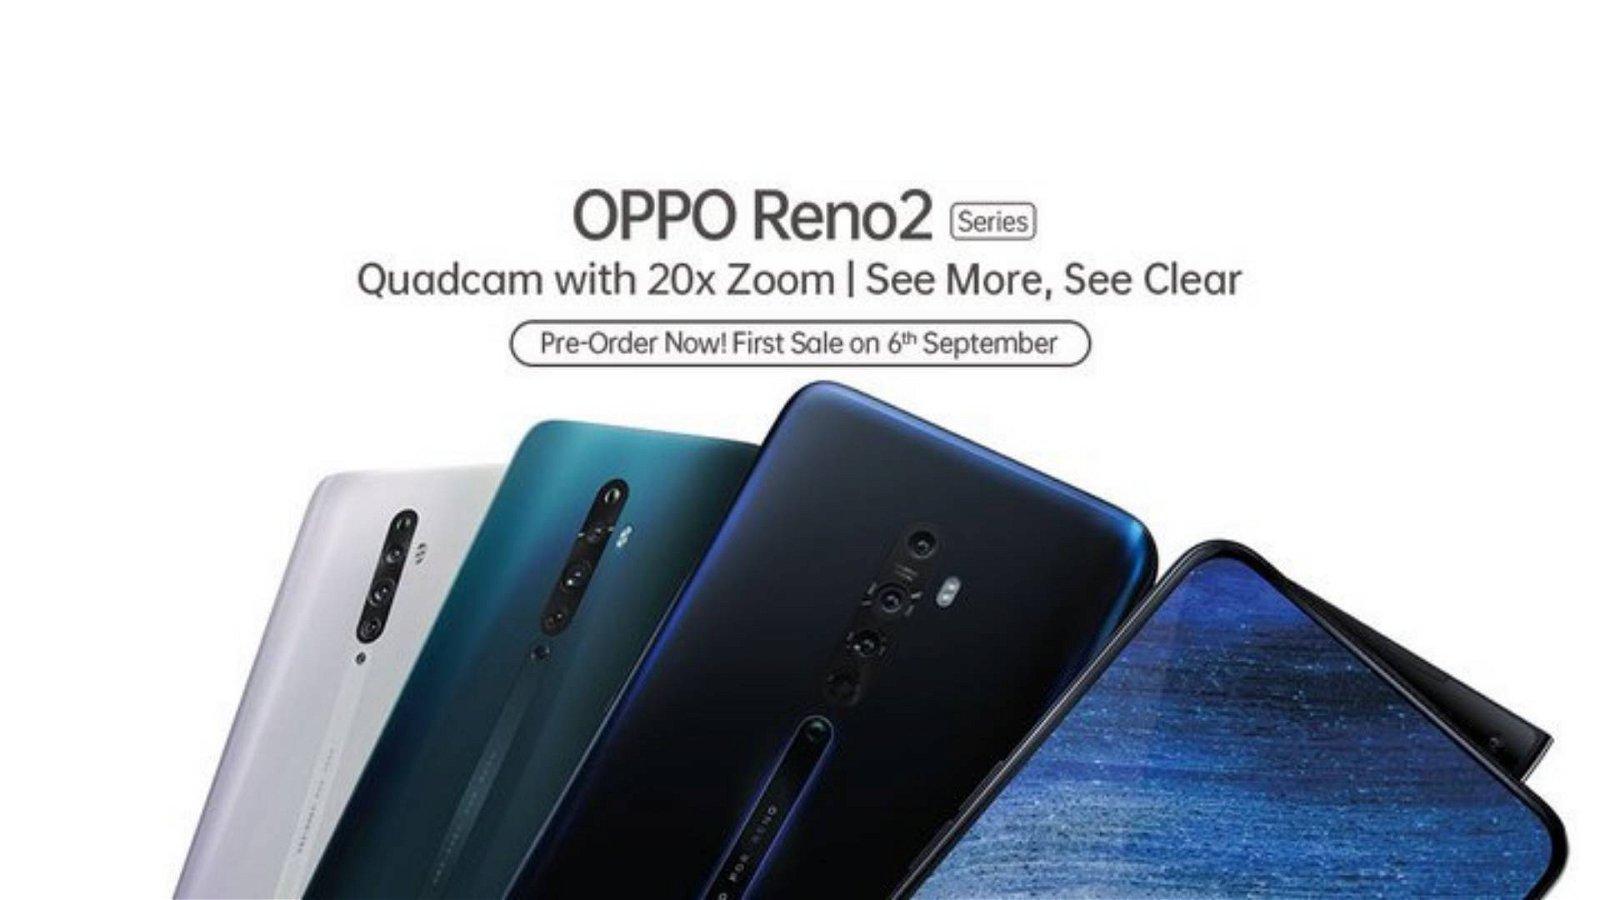 Immagine di OPPO Reno 2 ufficiali: la nuova serie arriva con tre smartphone